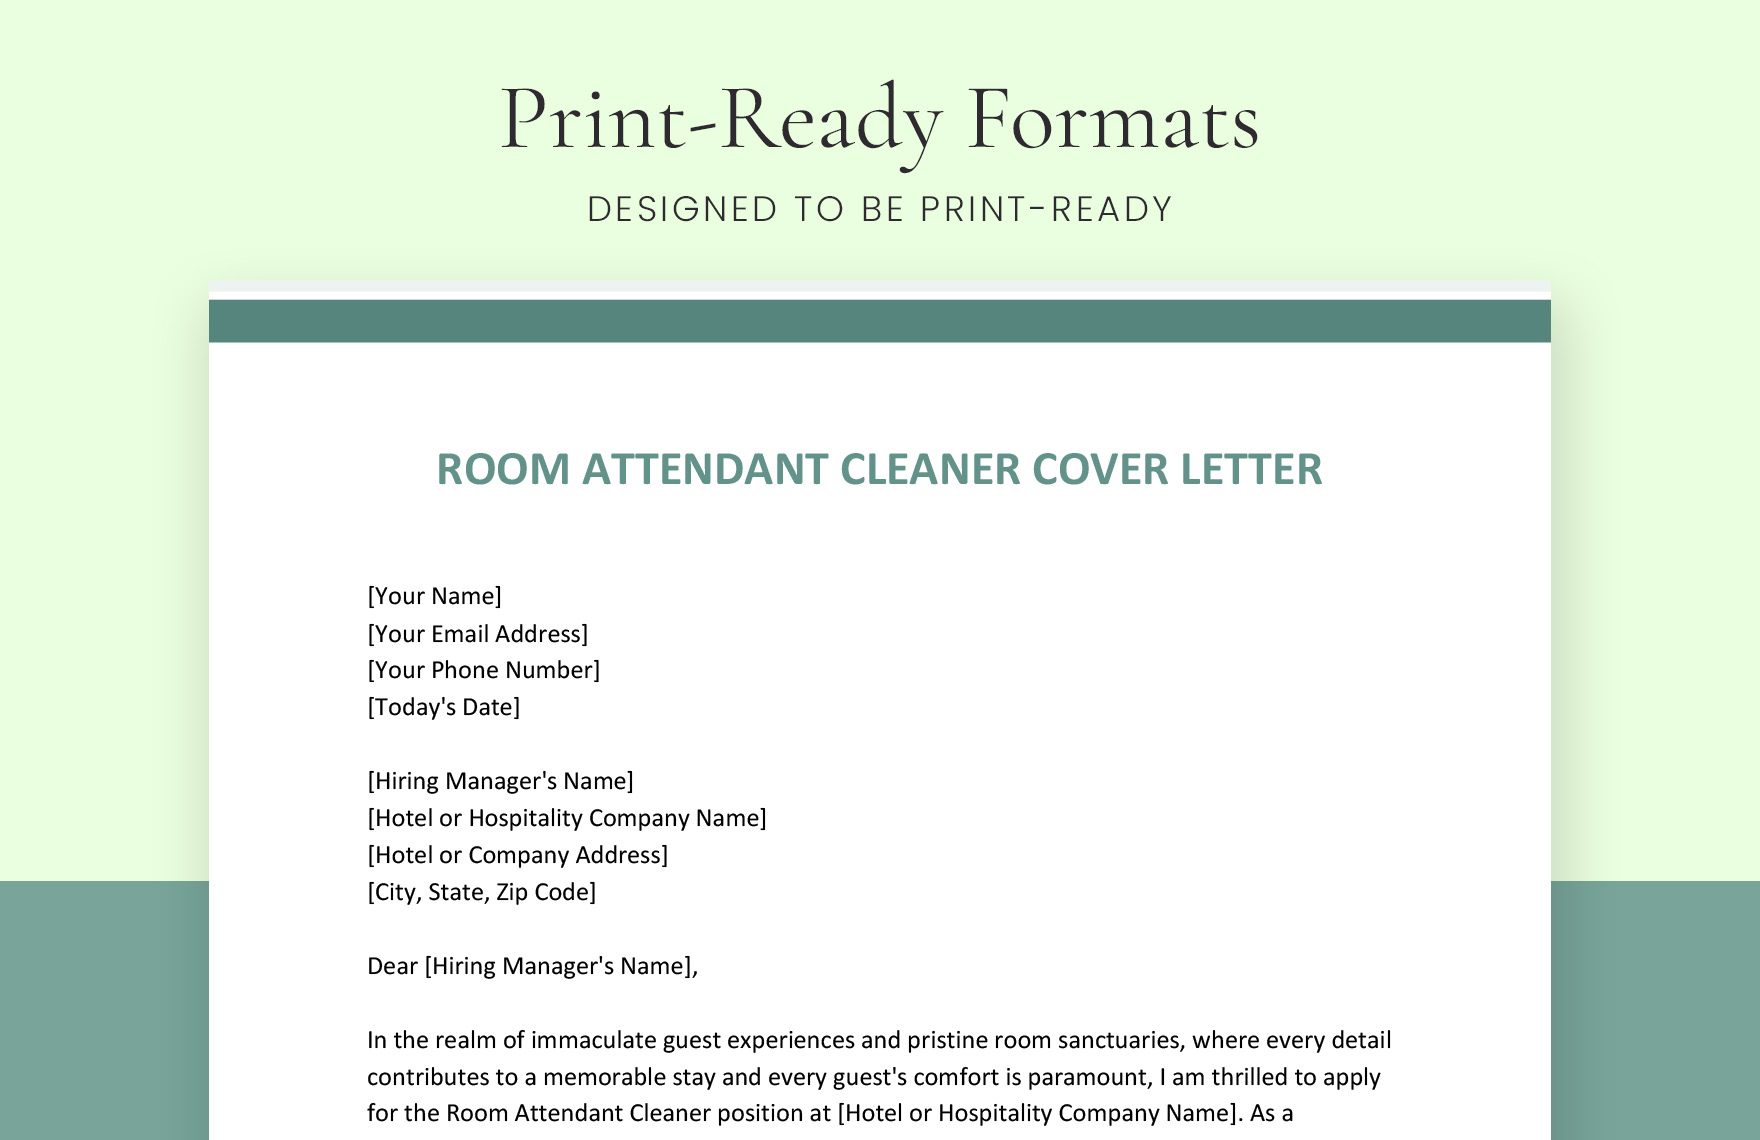 Room Attendant Cleaner Cover Letter